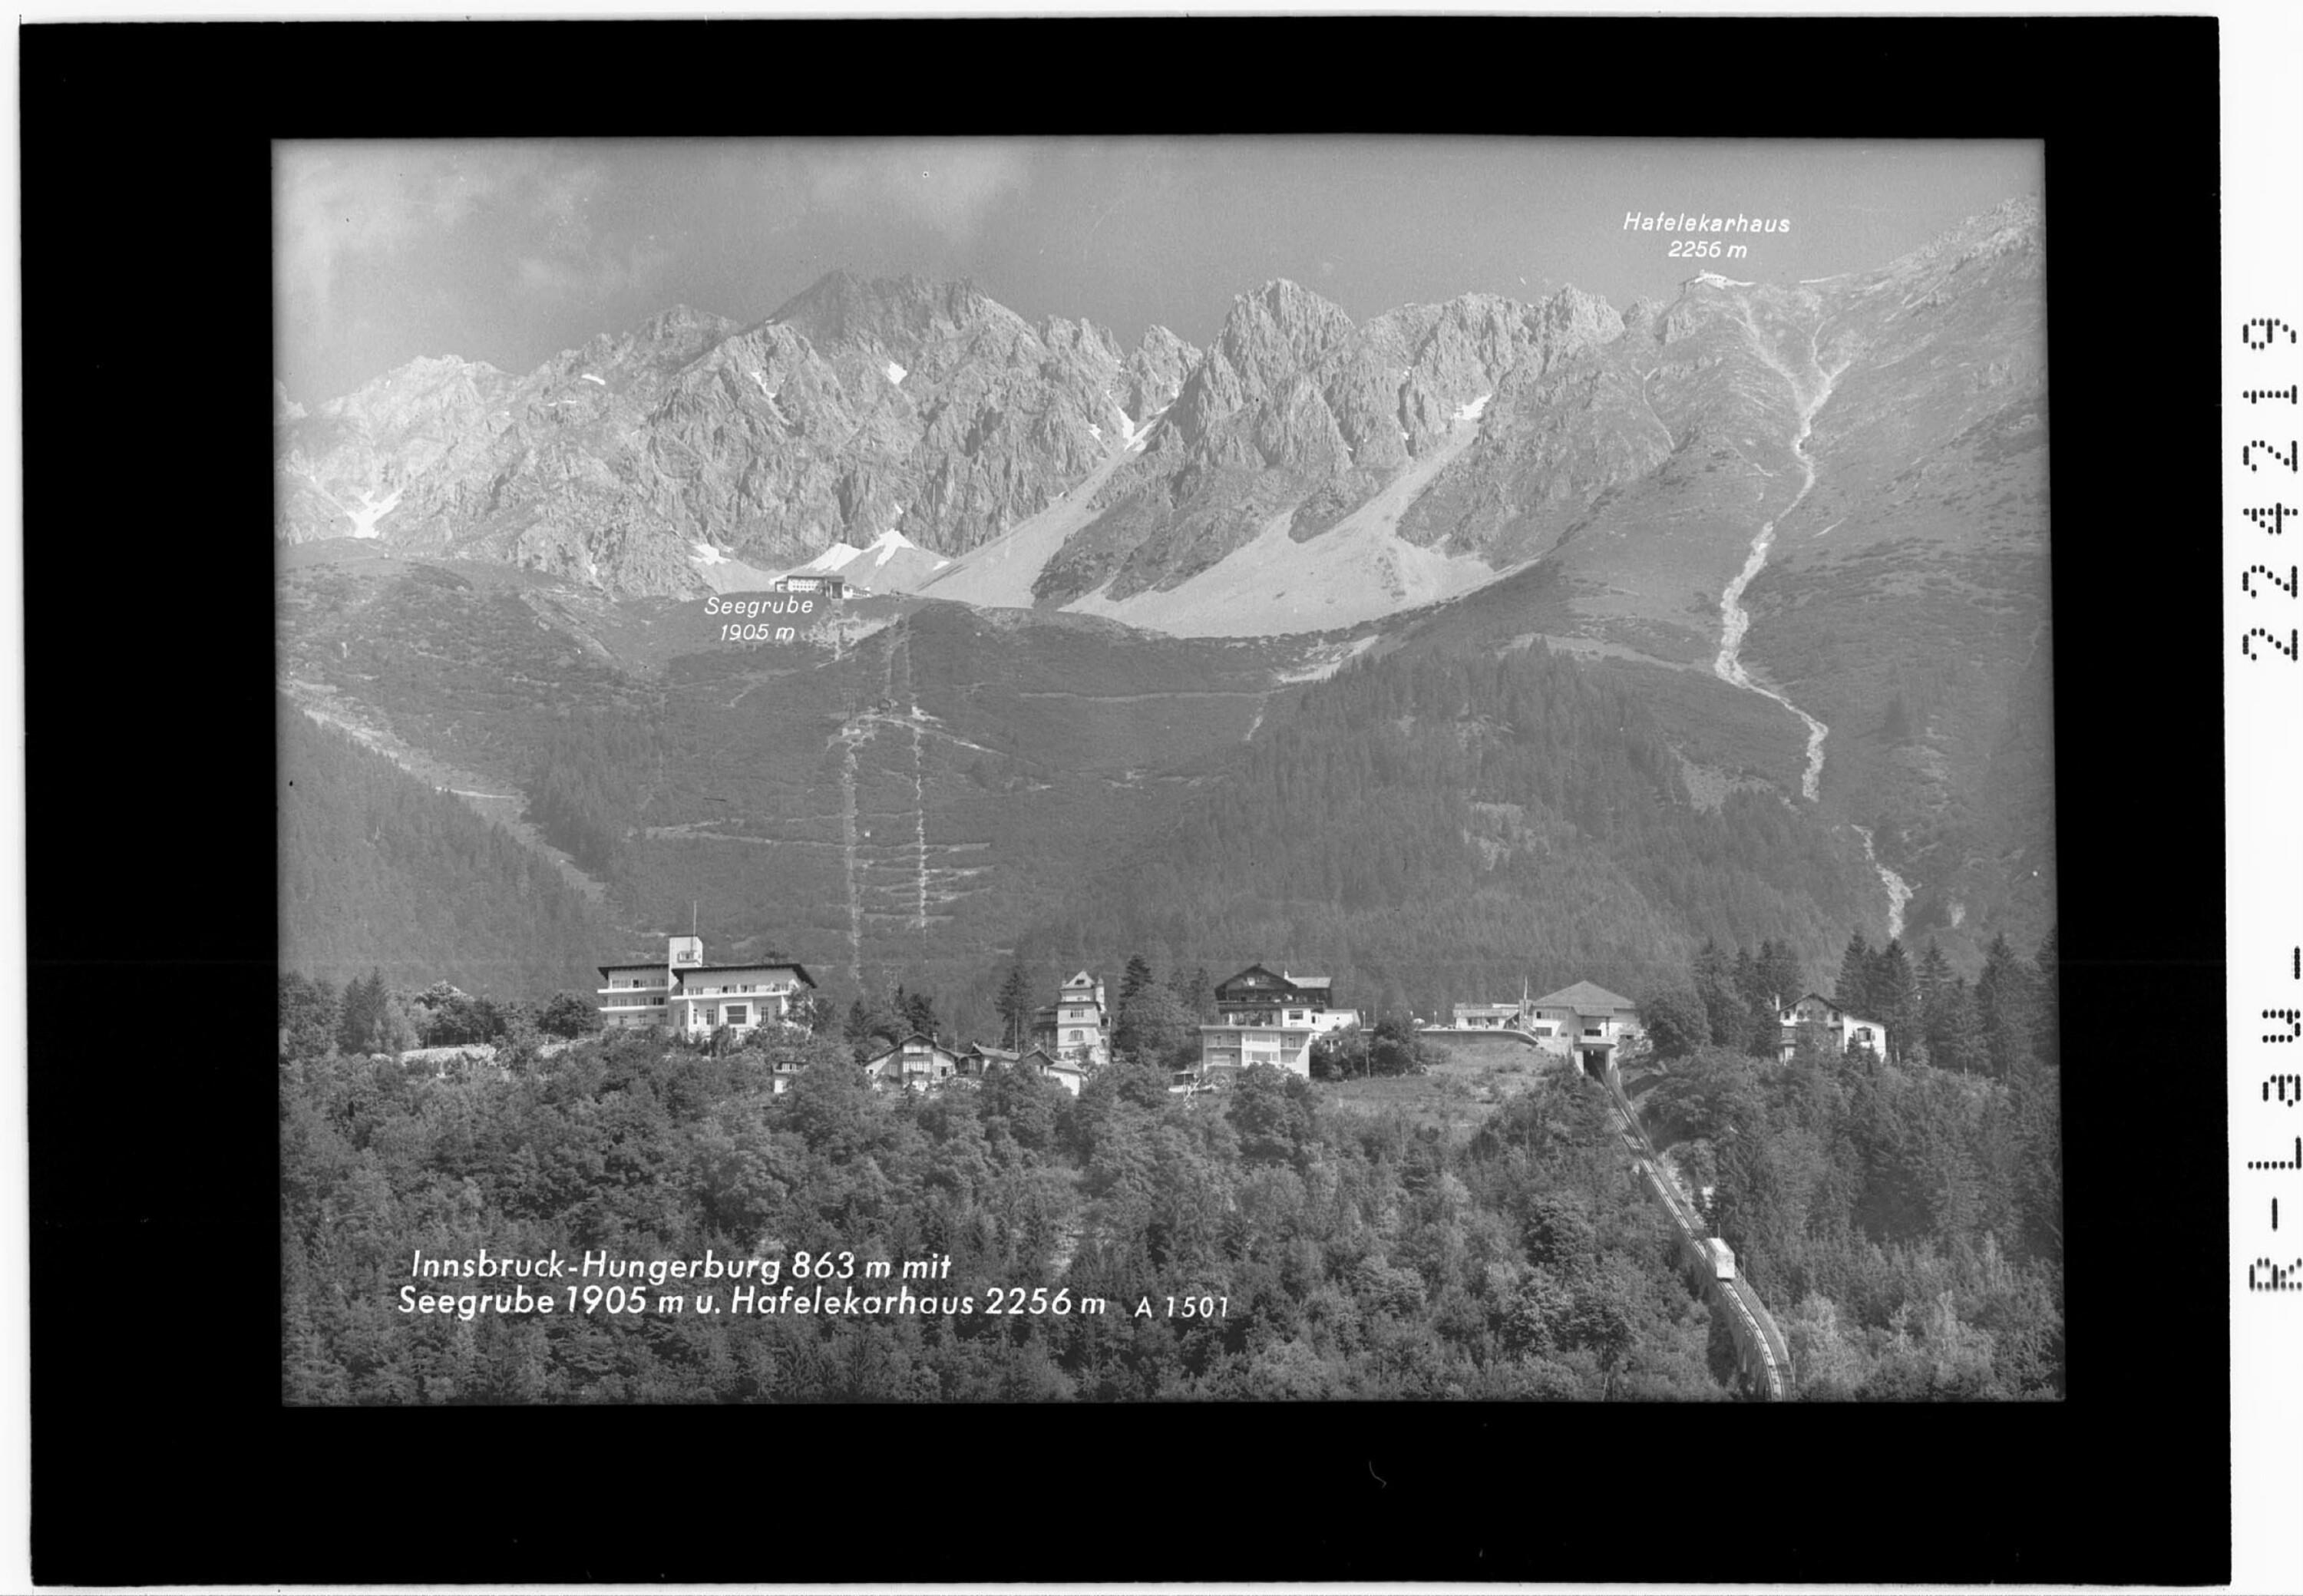 Innsbruck - Hungerburg 863 m mit Seegrube 1905 m und Hafelekarhaus 2256 m></div>


    <hr>
    <div class=